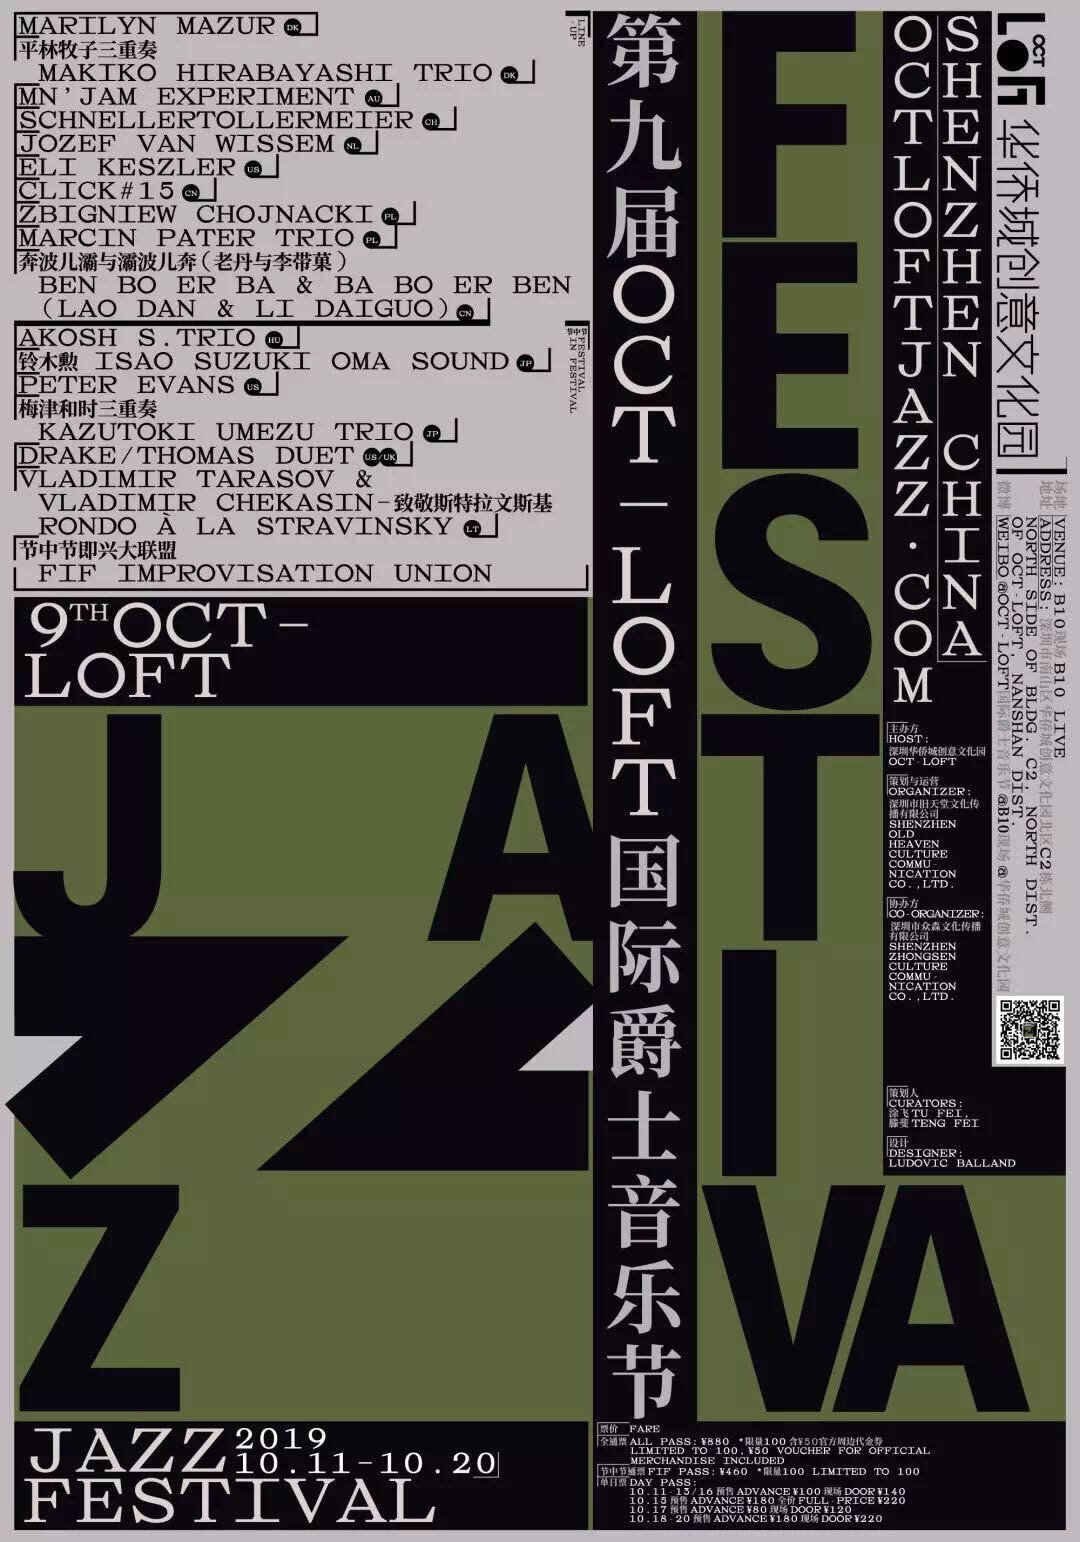 Jozef van Wissem @ Oct Loft Jazz Fest